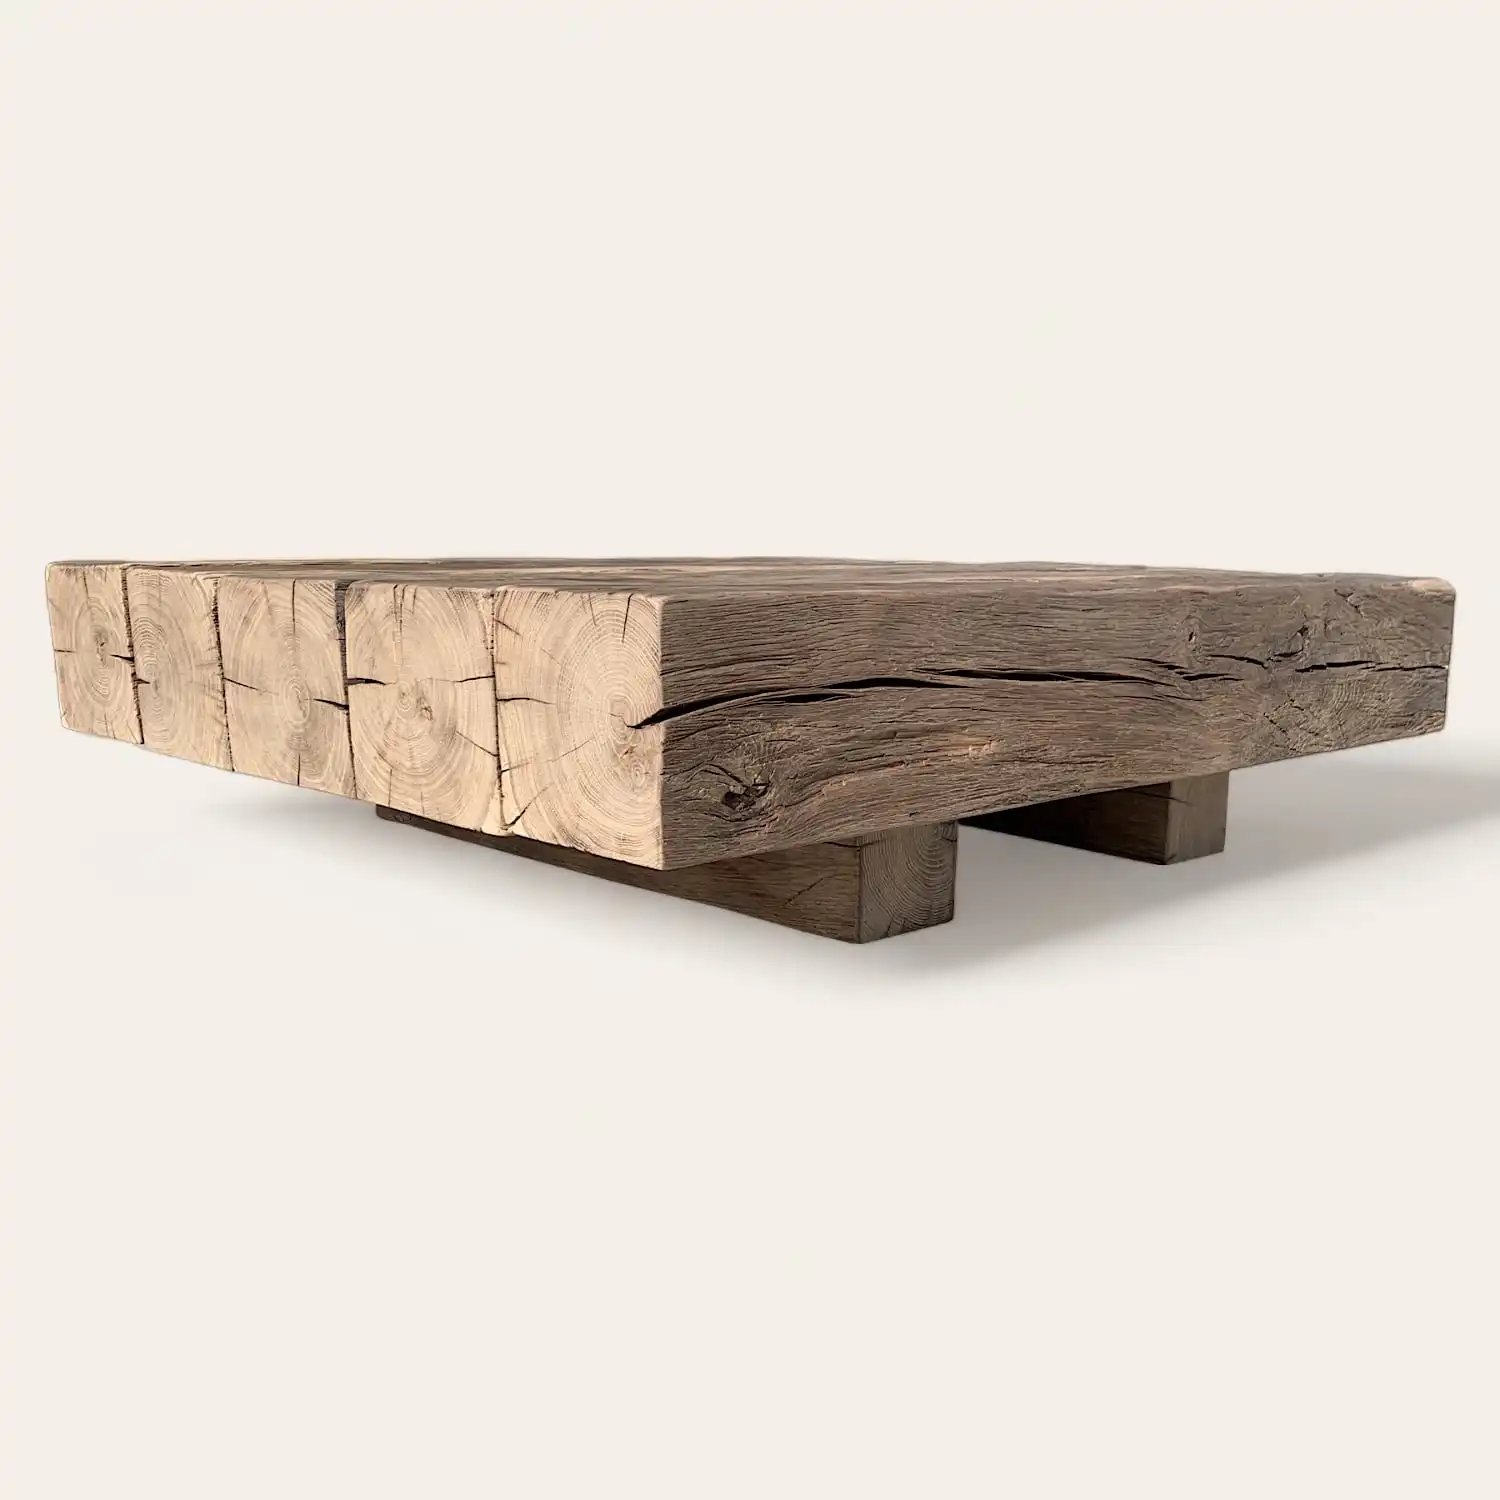  Une table basse rustique en bois. 